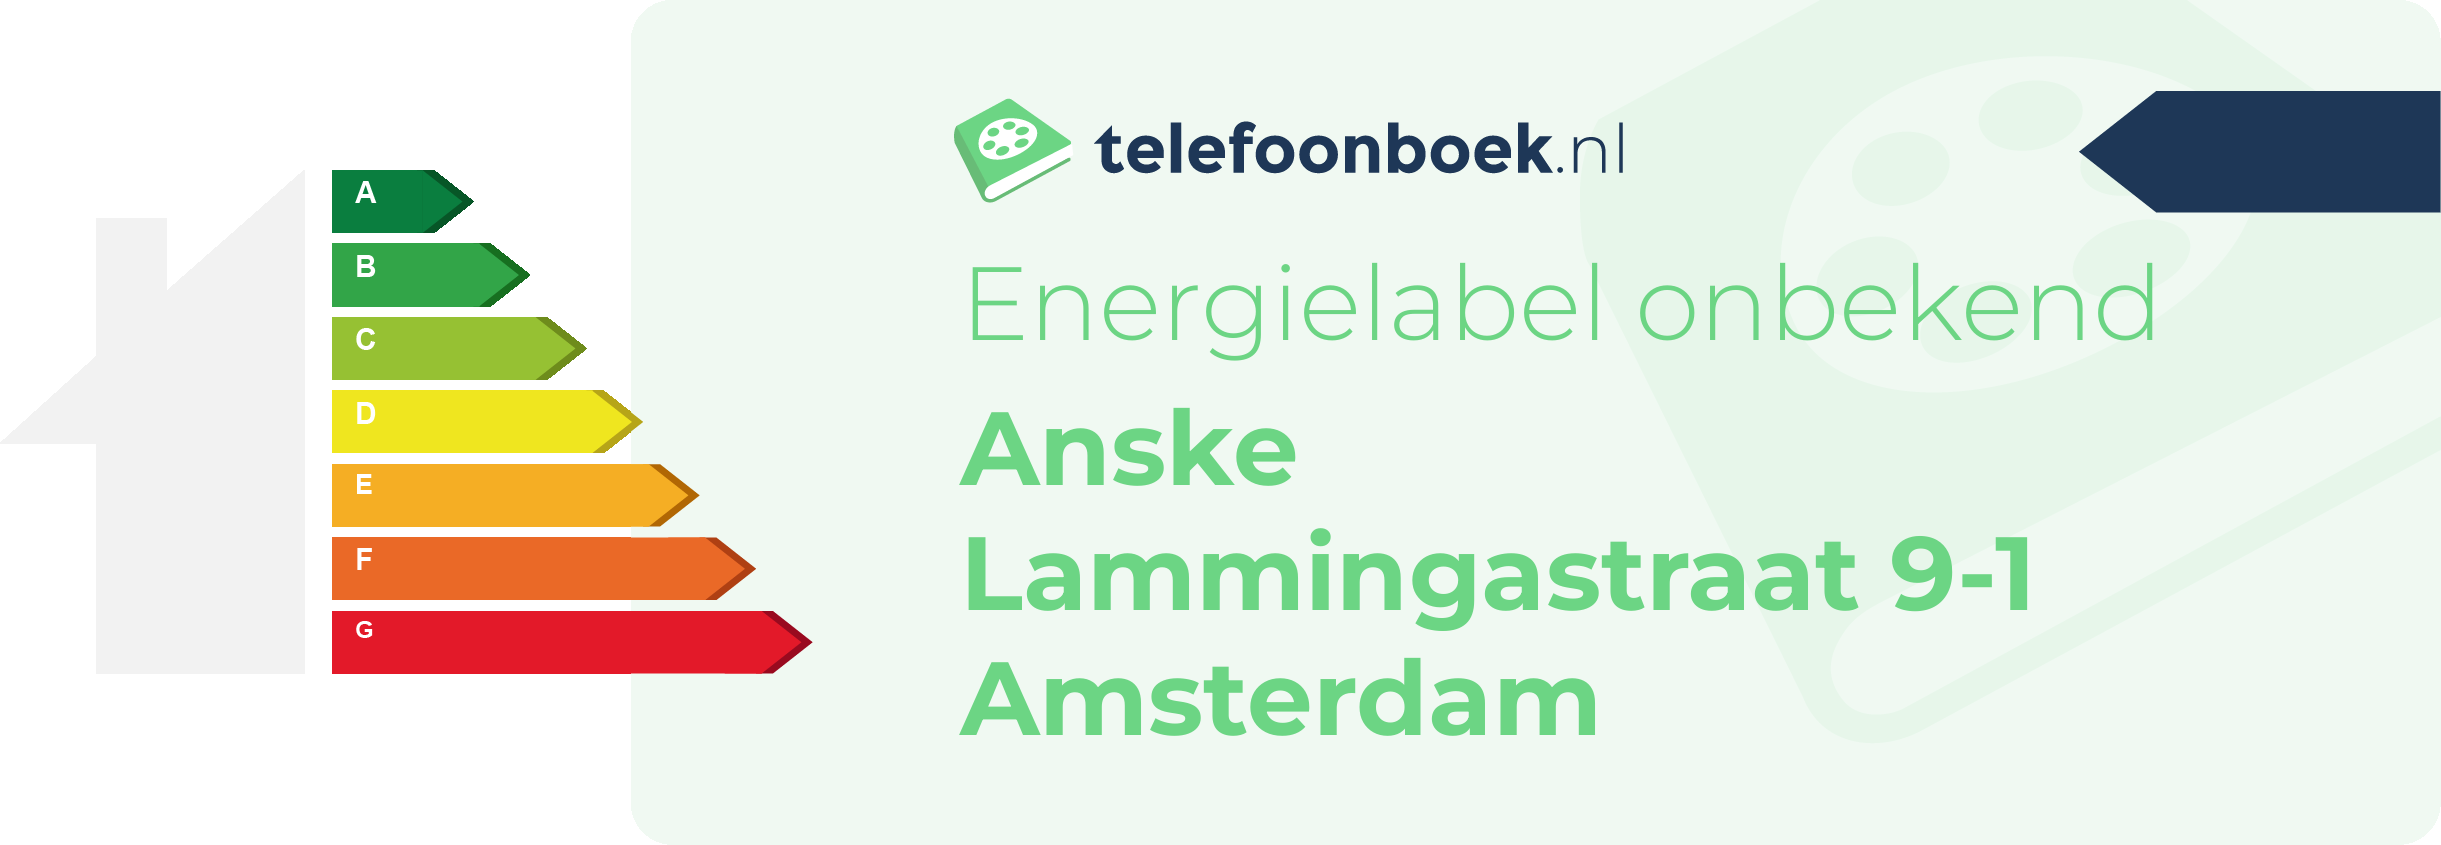 Energielabel Anske Lammingastraat 9-1 Amsterdam